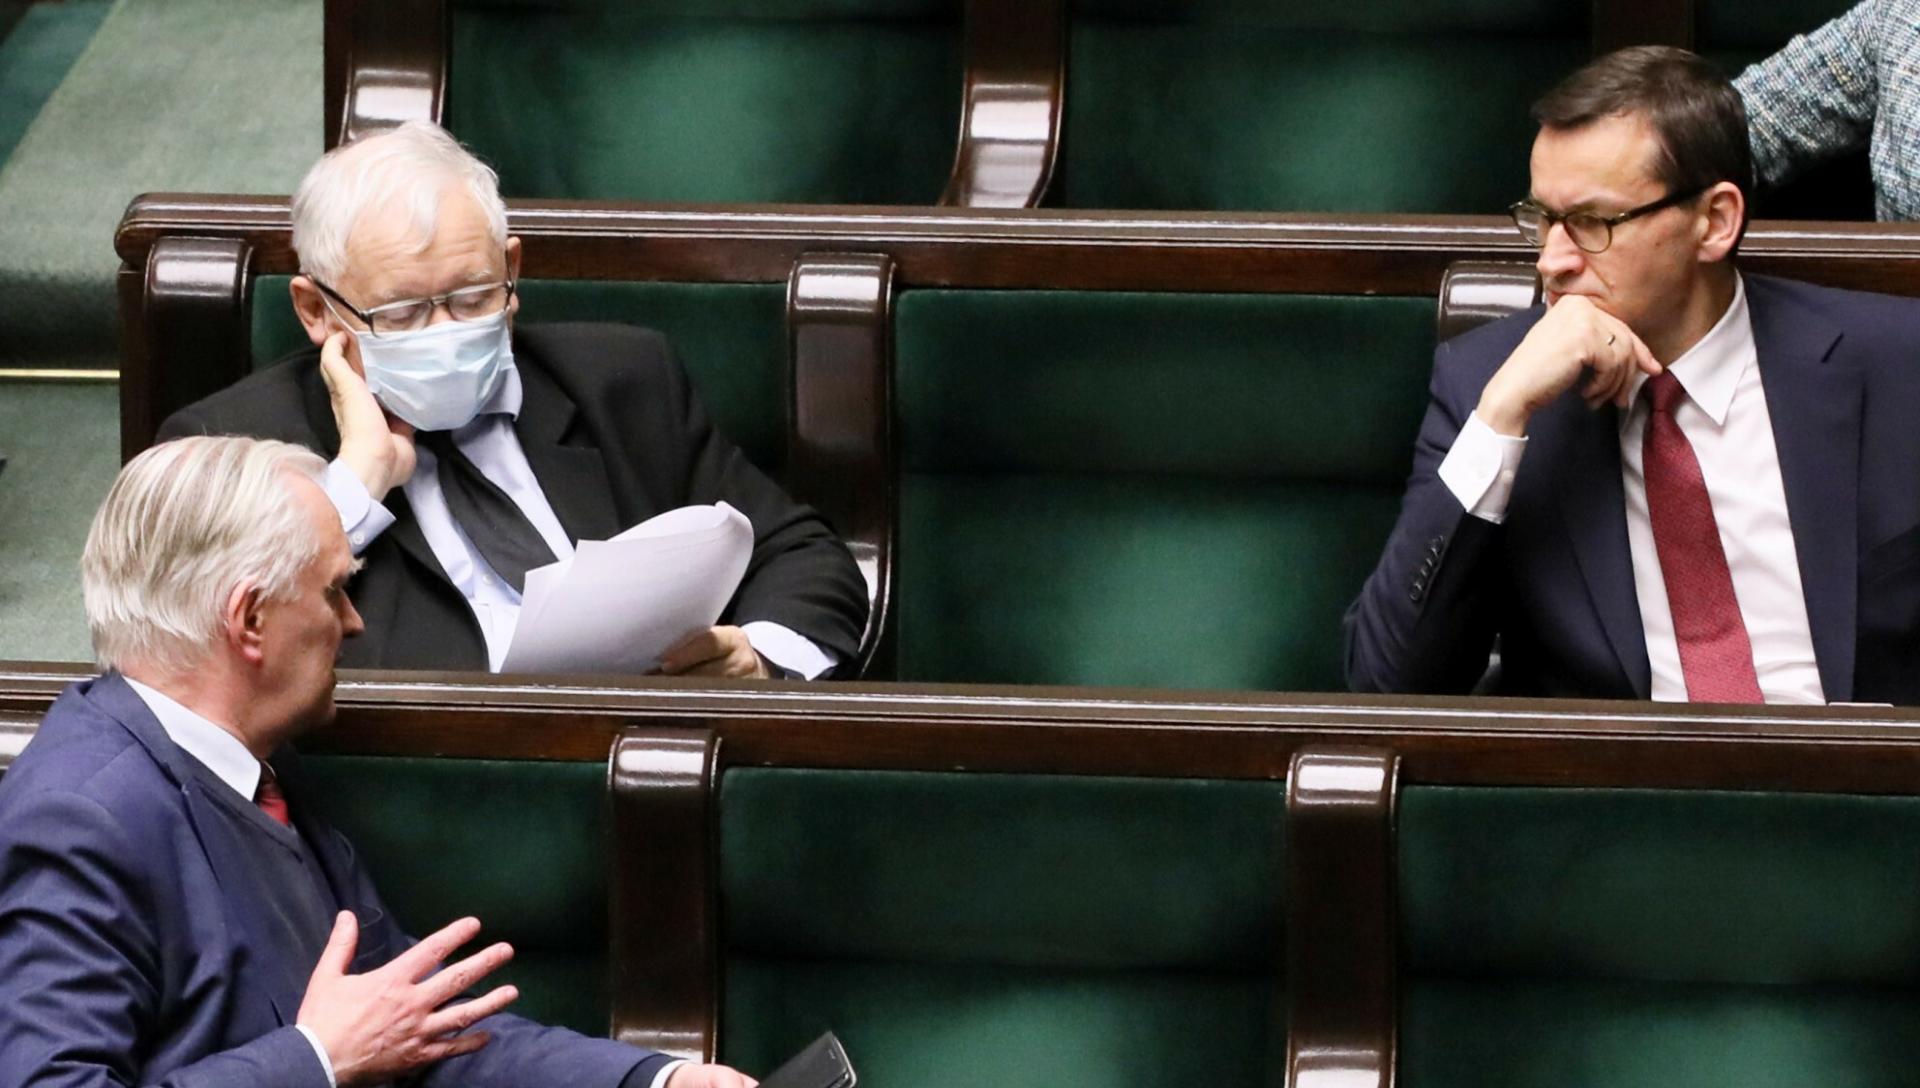 Szef Porozumienia Jarosław Gowin domaga się zdymisjonowania trzech ministrów z ugrupowania.